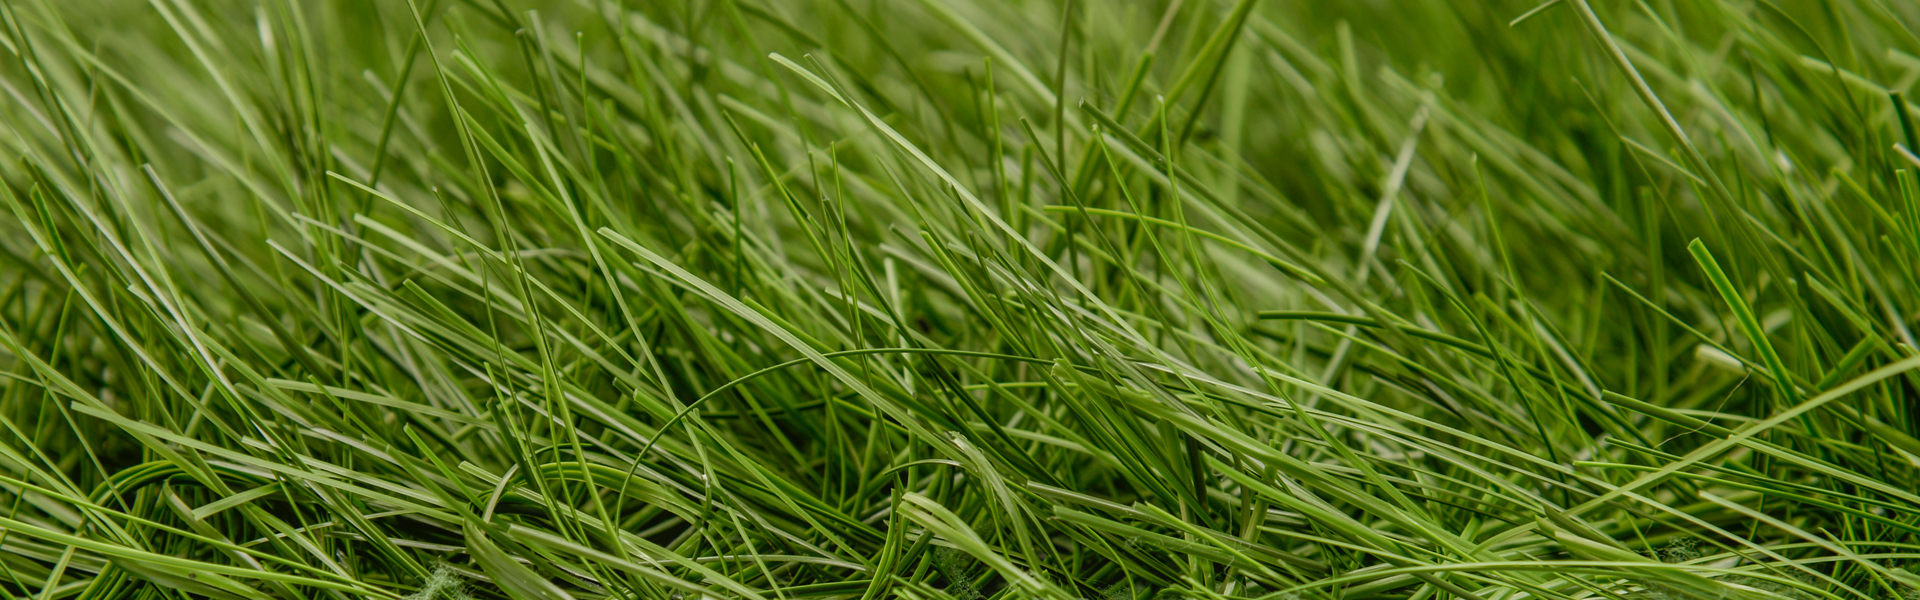 تكلفة إنتاج العشب الاصطناعي الهجين